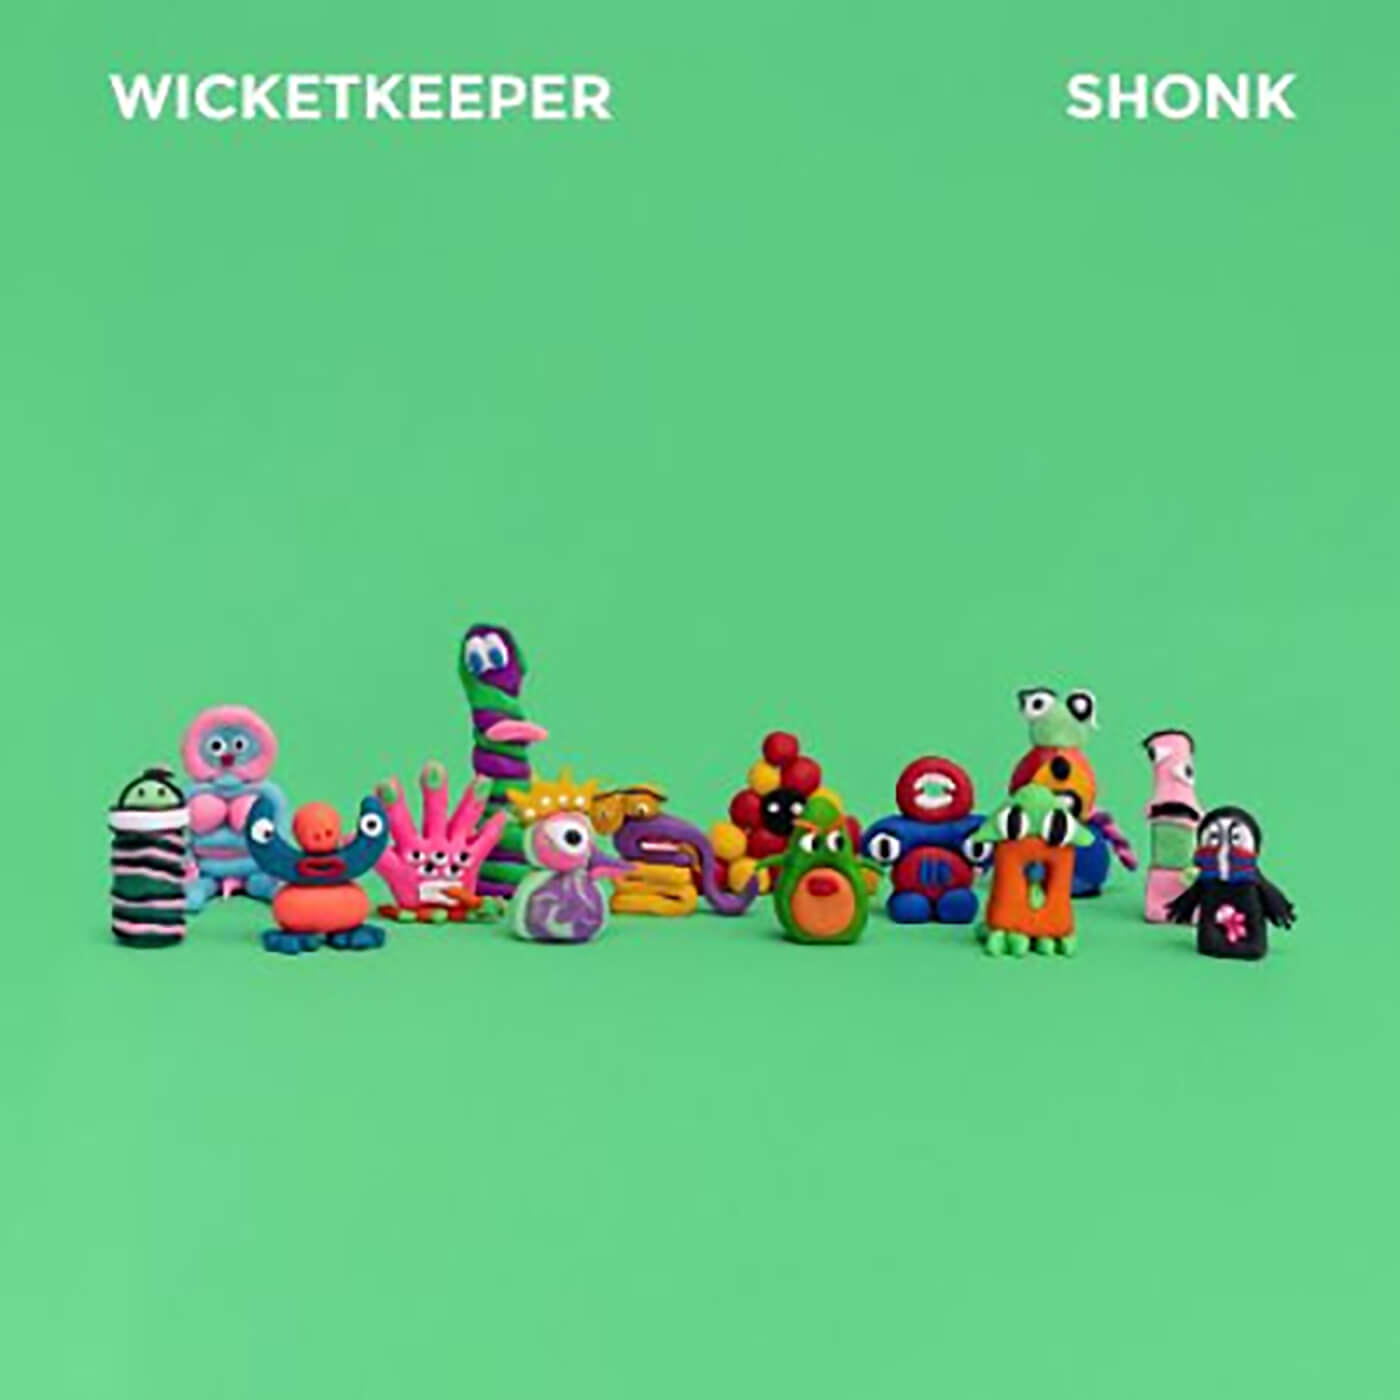 Wicketkeeper - Shonk